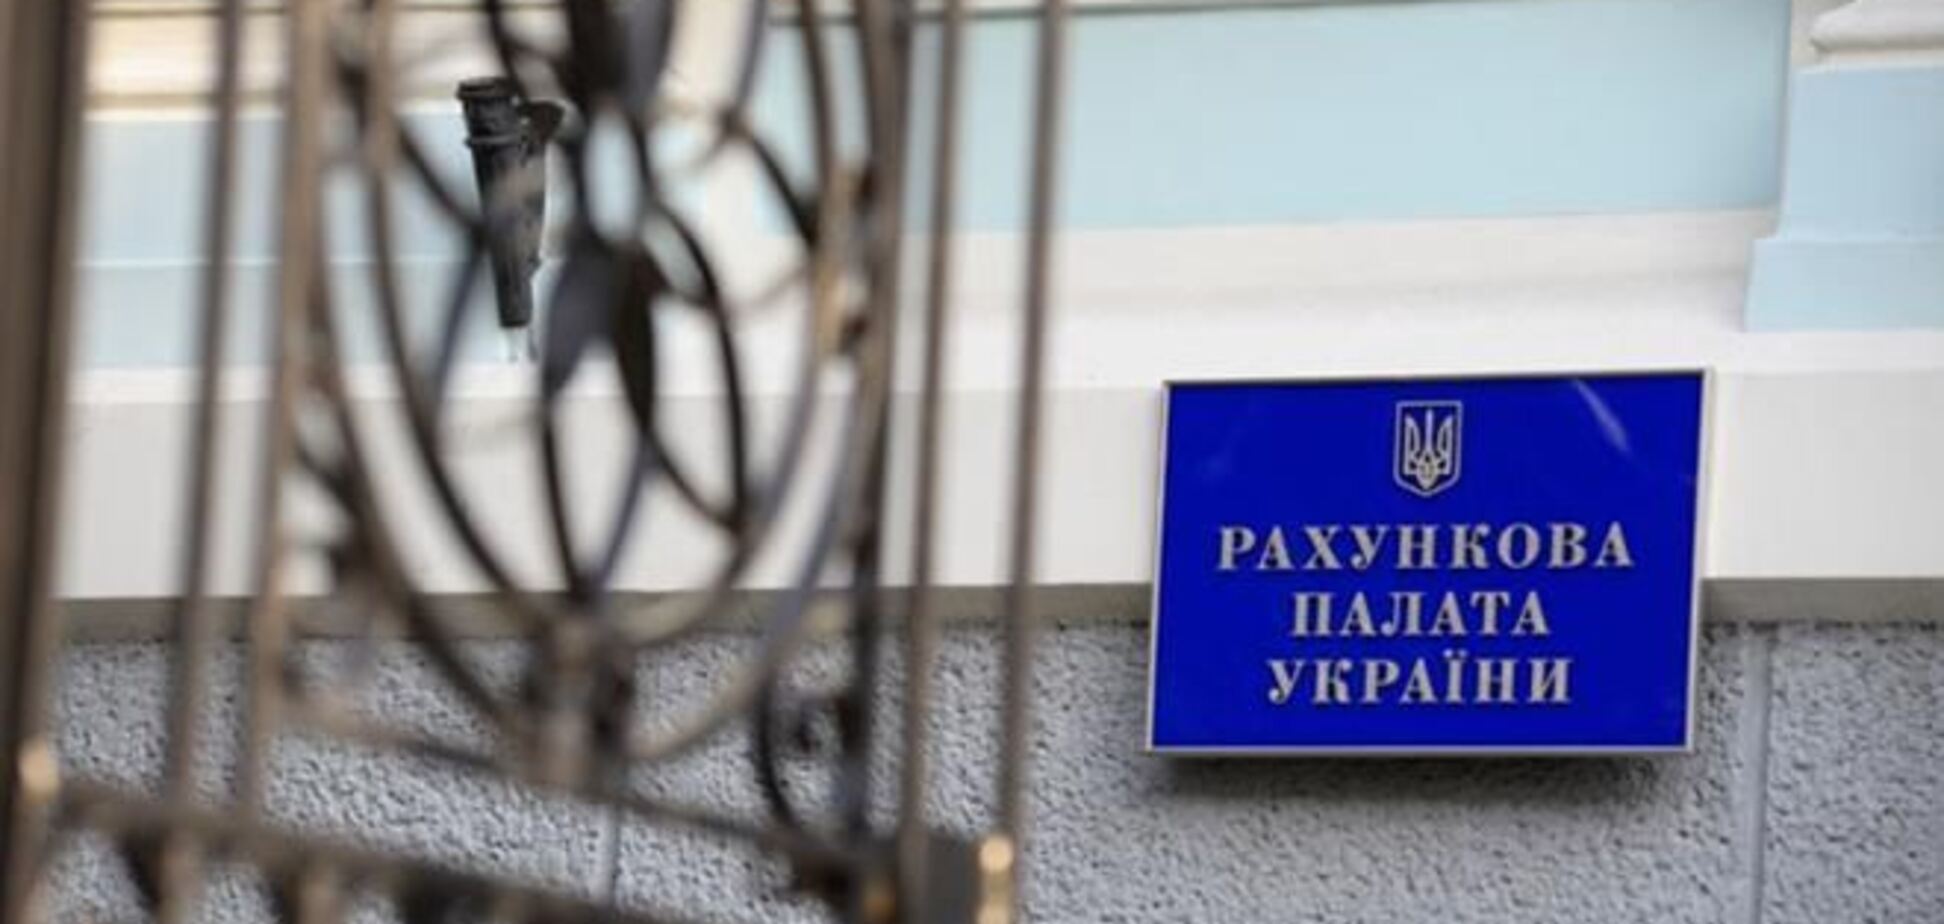 Янукович одобрил расширение полномочий Счетной палаты